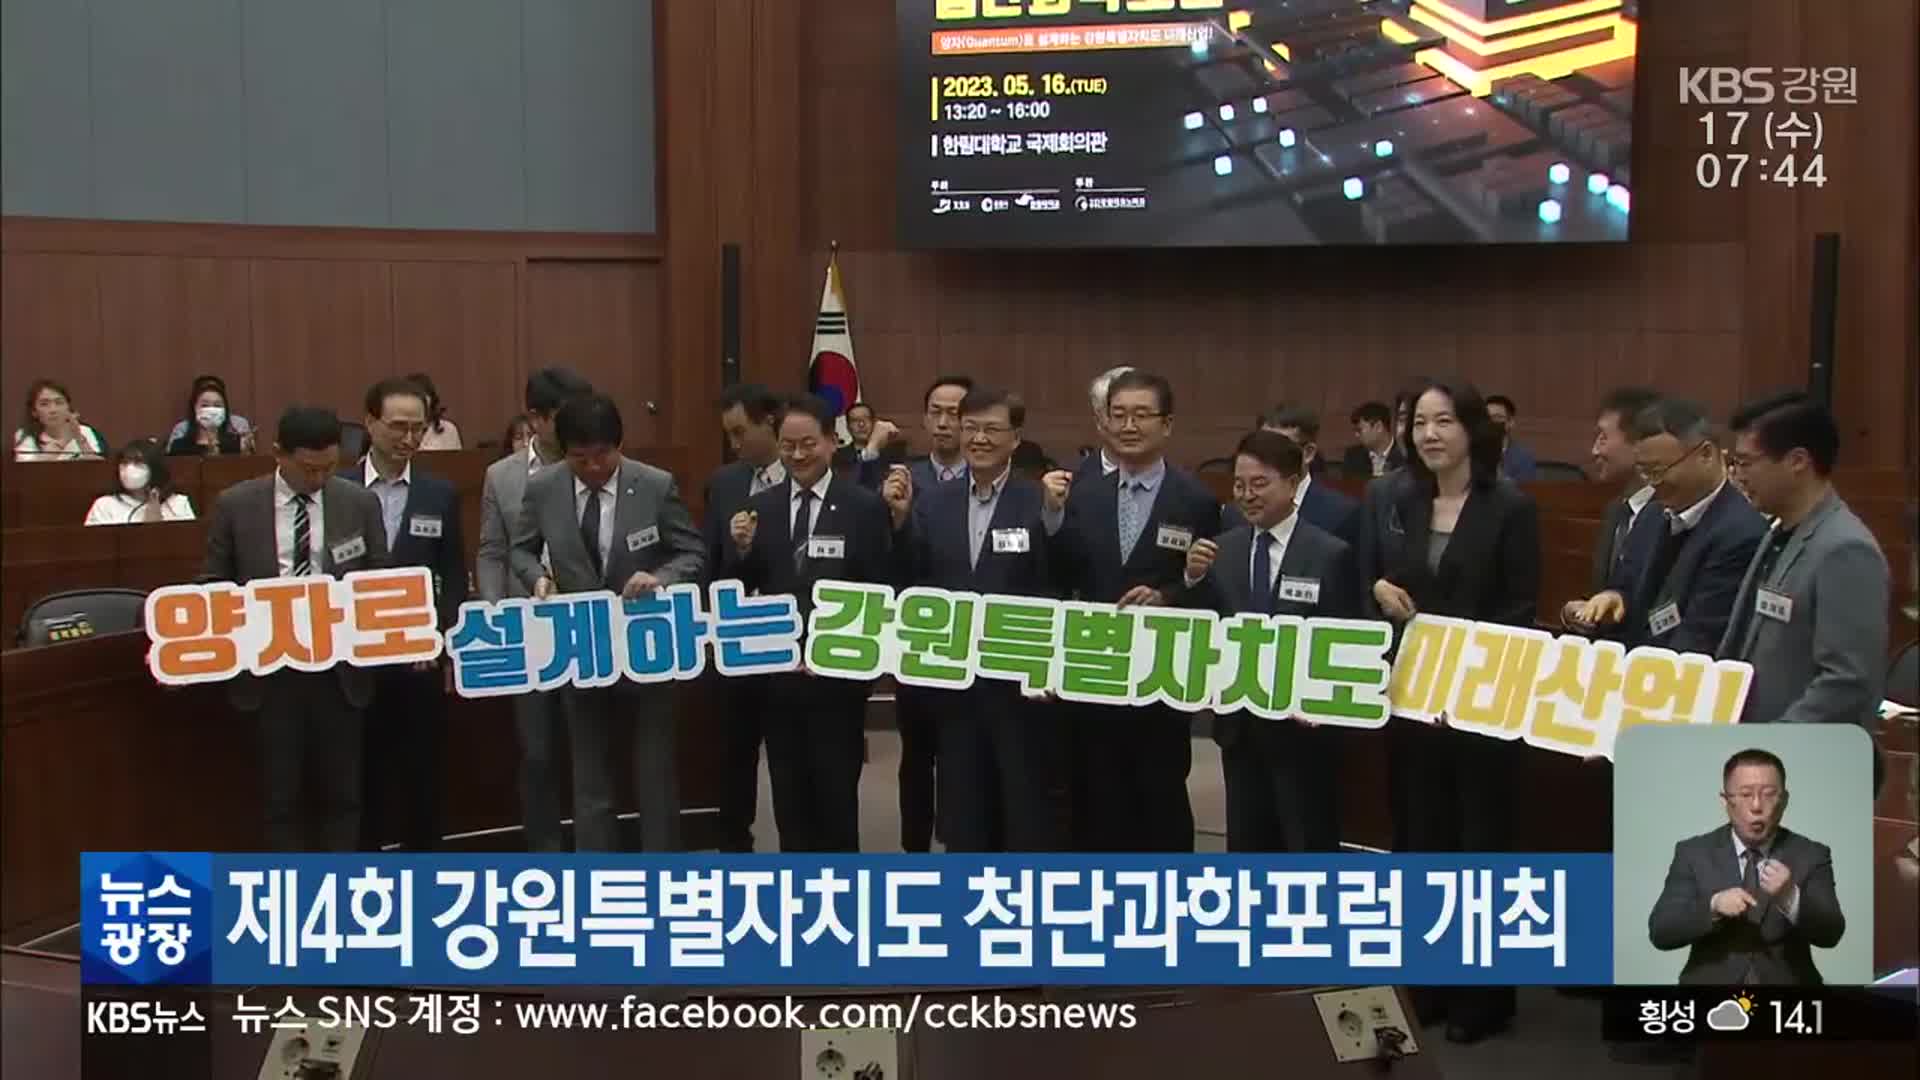 제4회 강원특별자치도 첨단과학포럼 개최